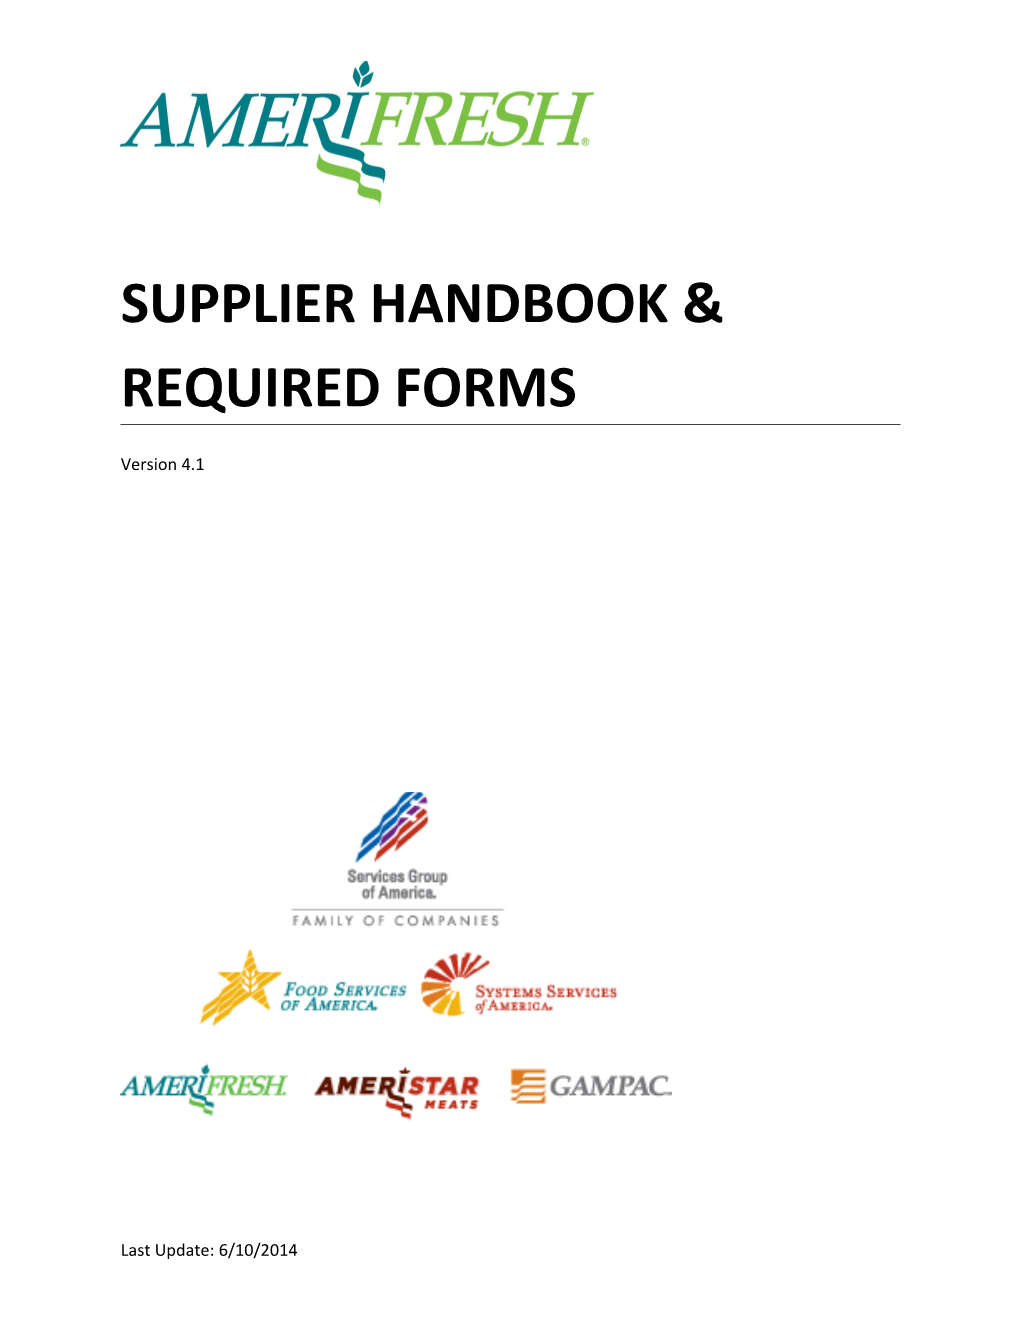 Supplier Handbook & Required Forms